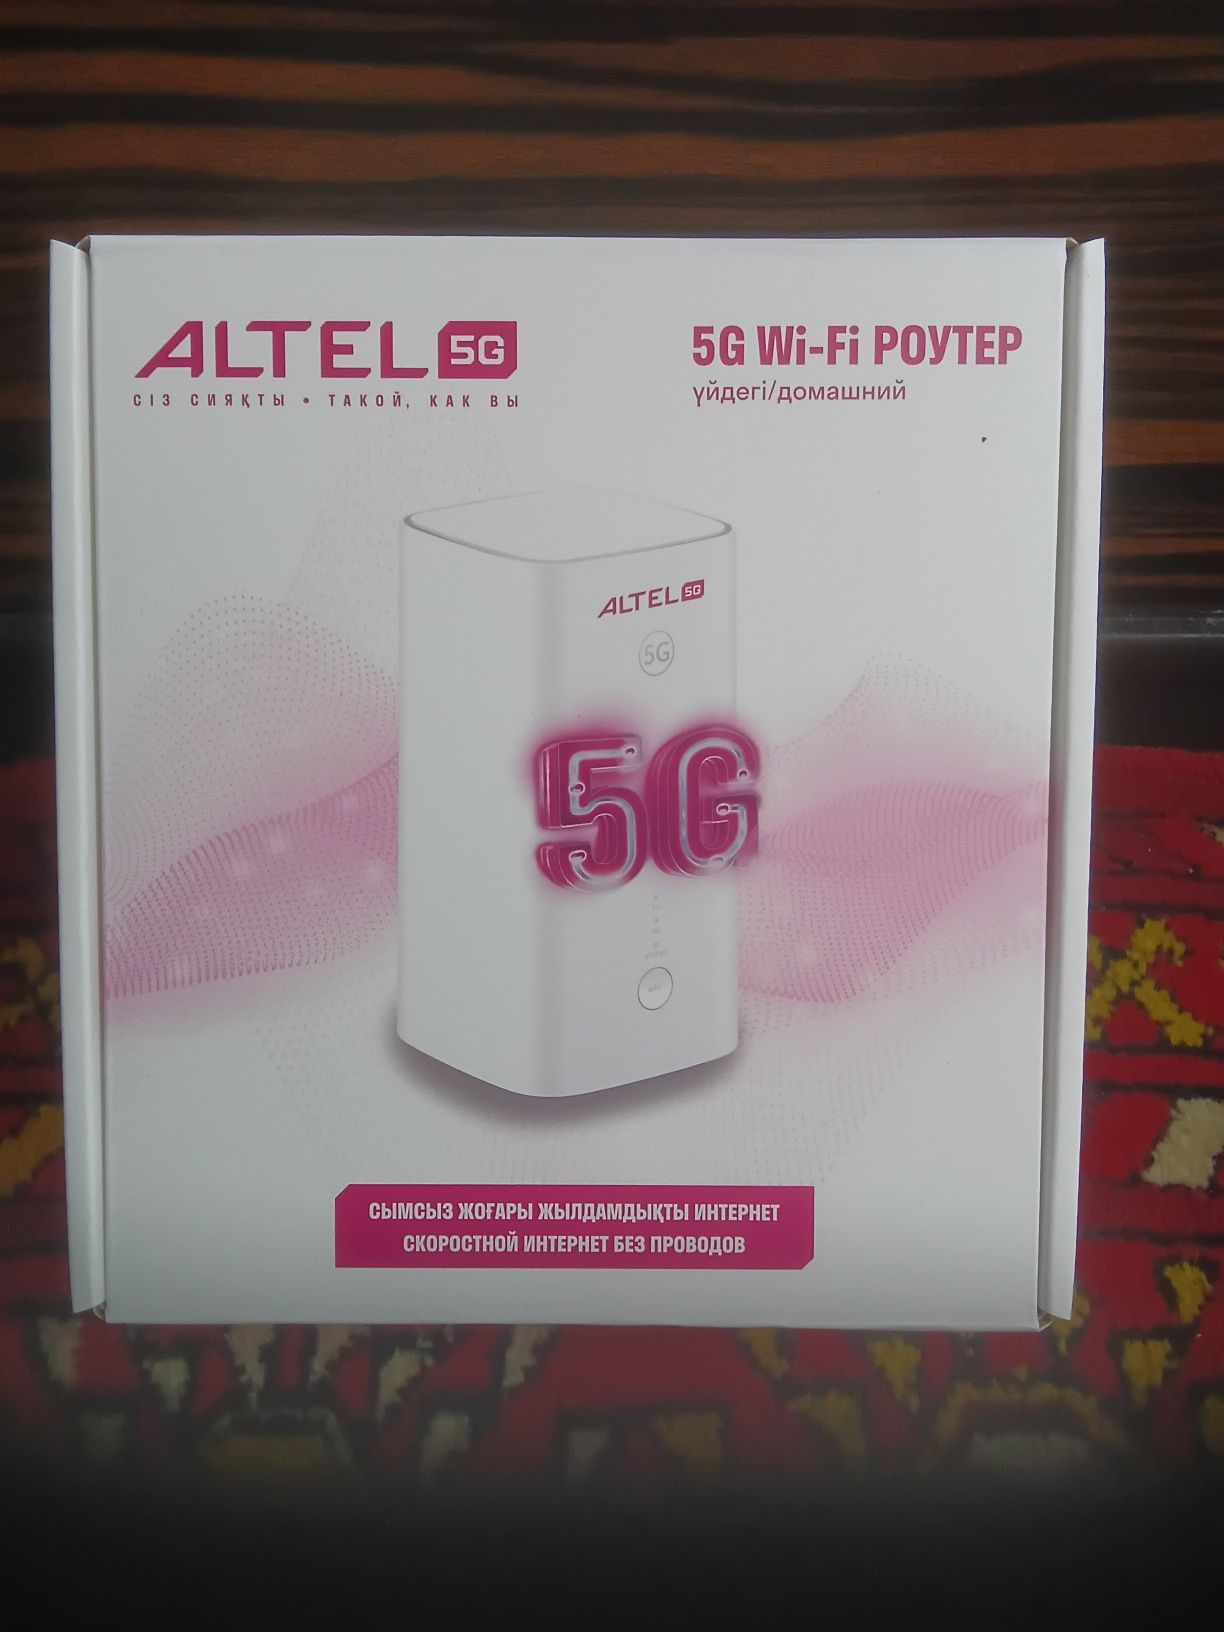 5G абсолютно новый!  в 4G с агрегацией сат19 роутер алтел модем вайфай